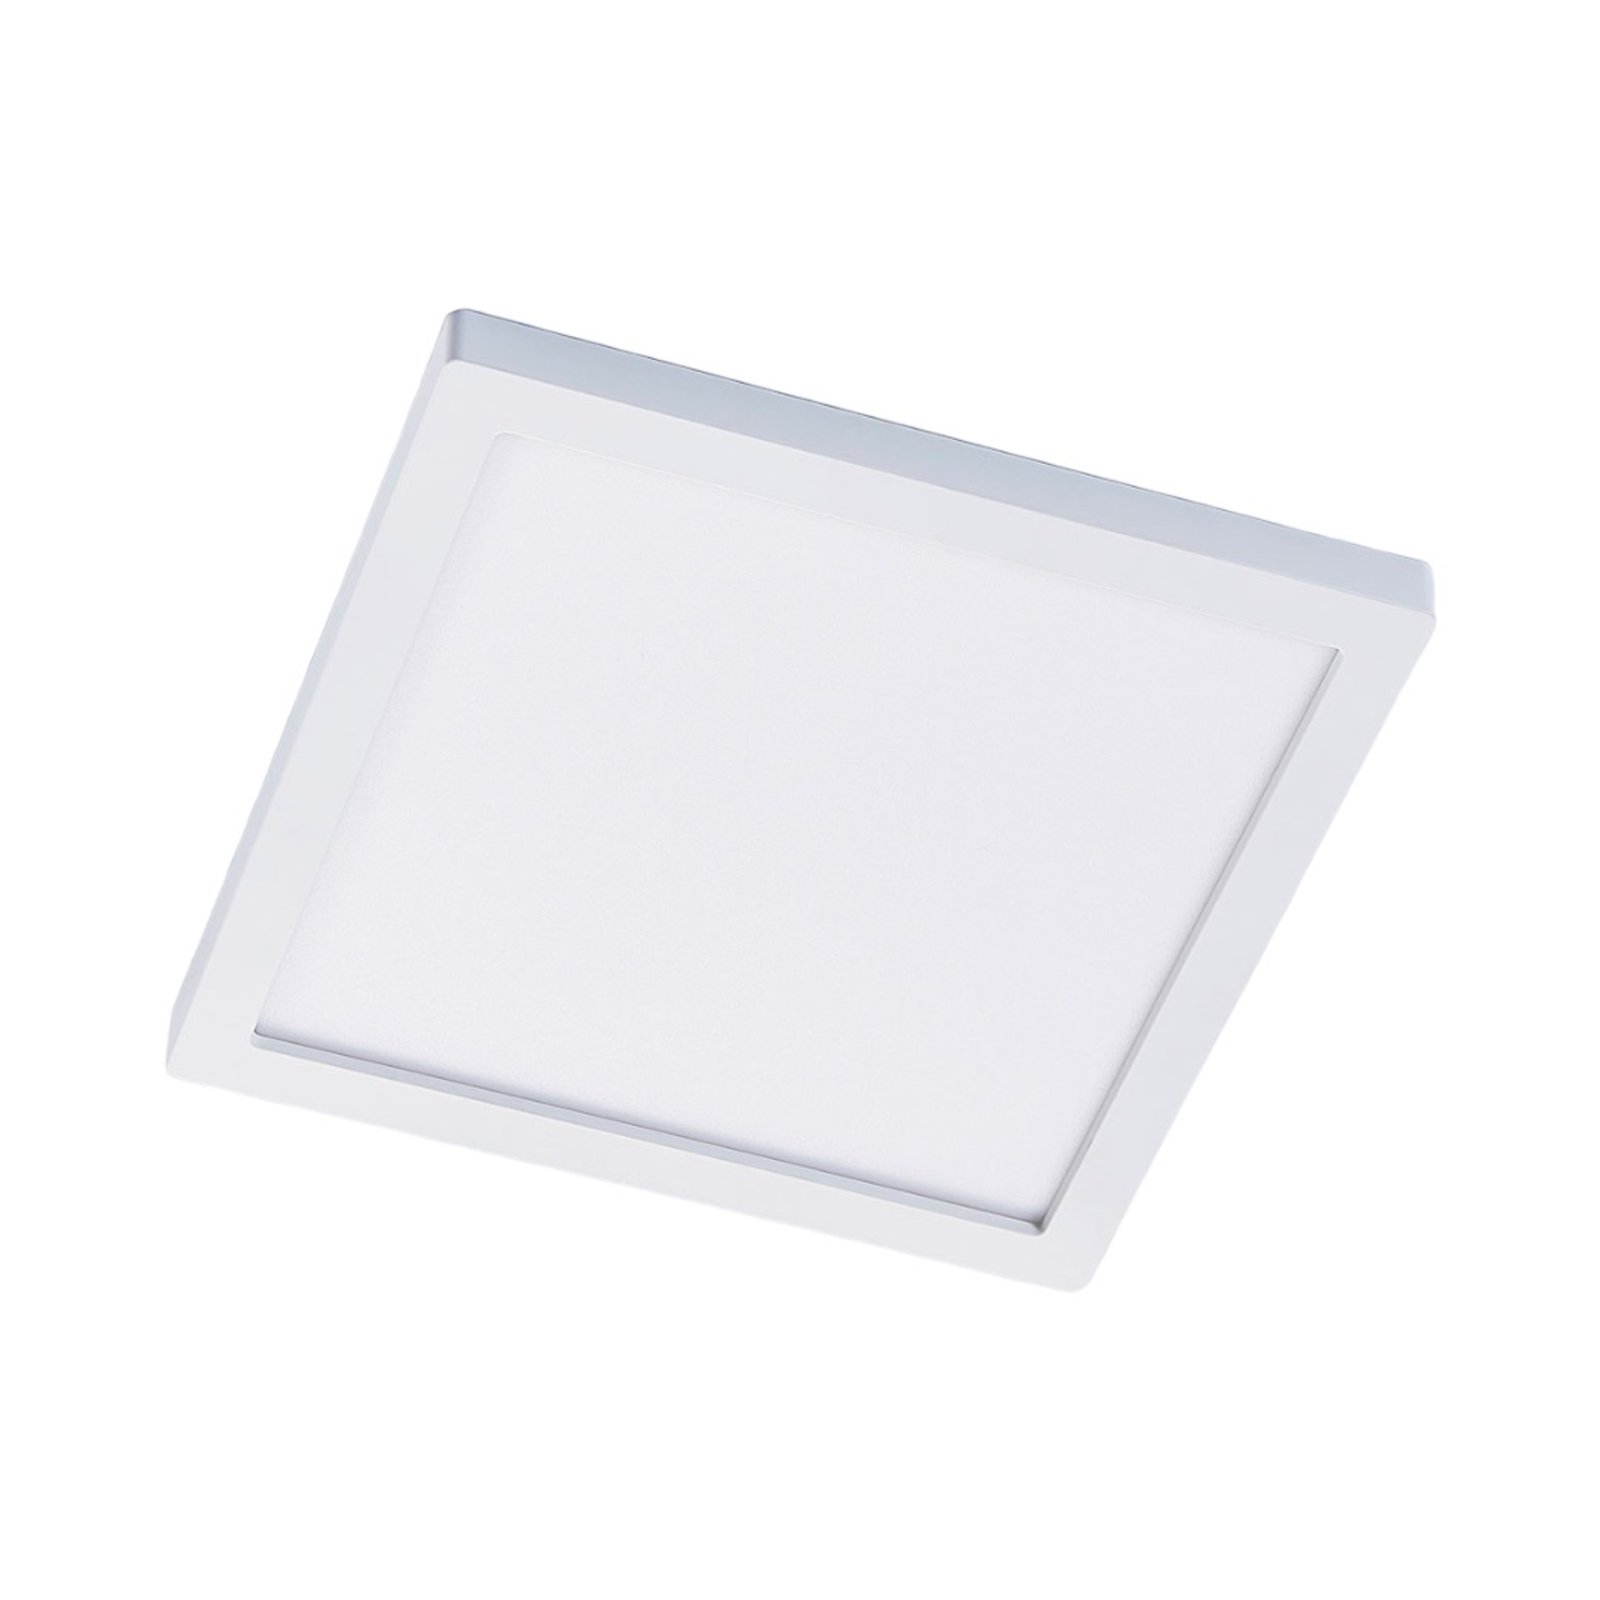 Solvie LED plafondlamp, wit, hoekig, 30 x 30 cm